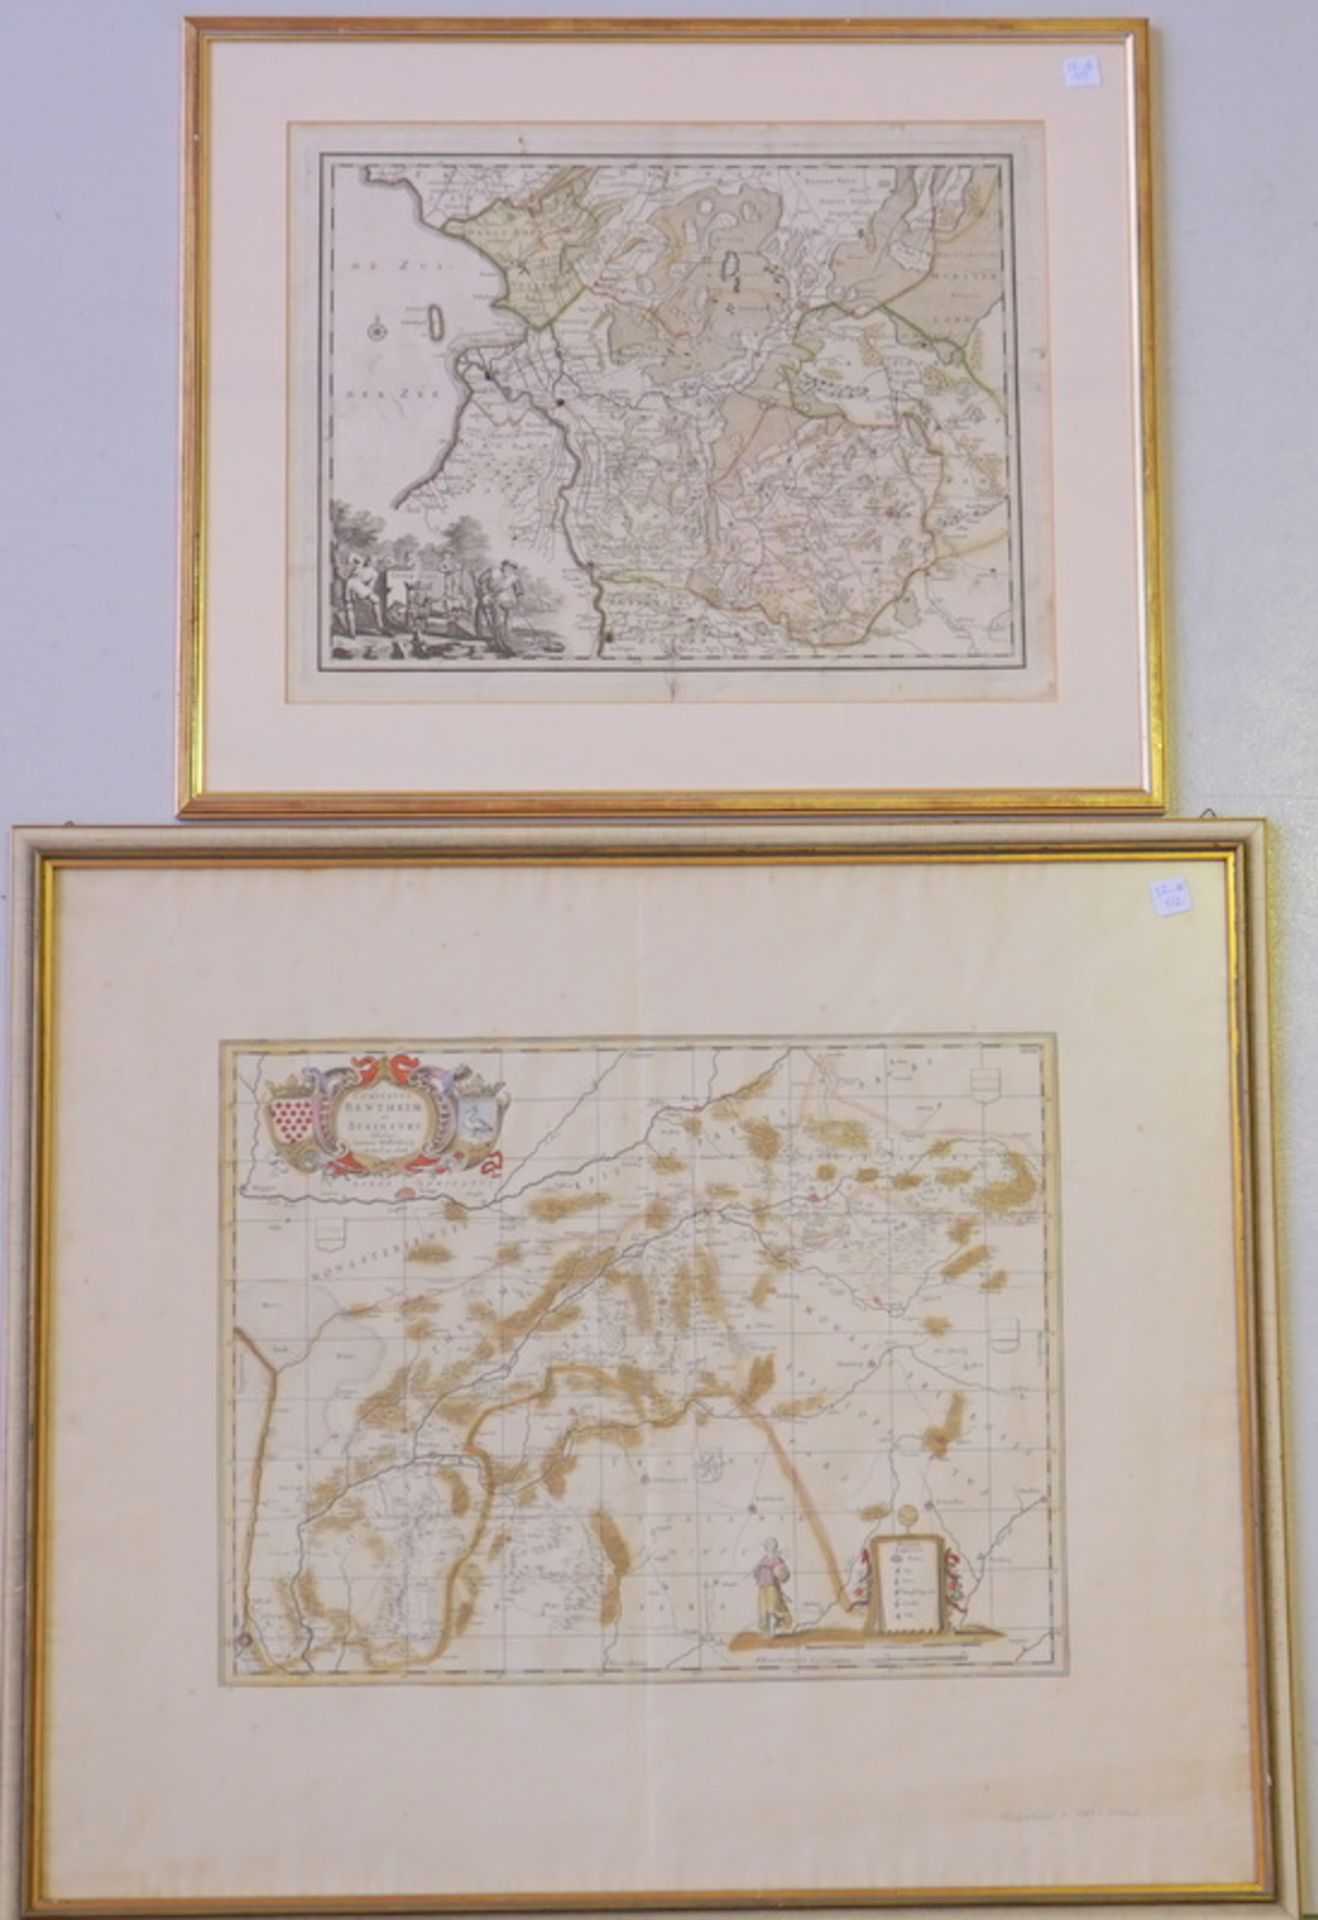 Zwei Karten: De Zuider Zee und Bentheim/Steinfurt, 19. Jhd.